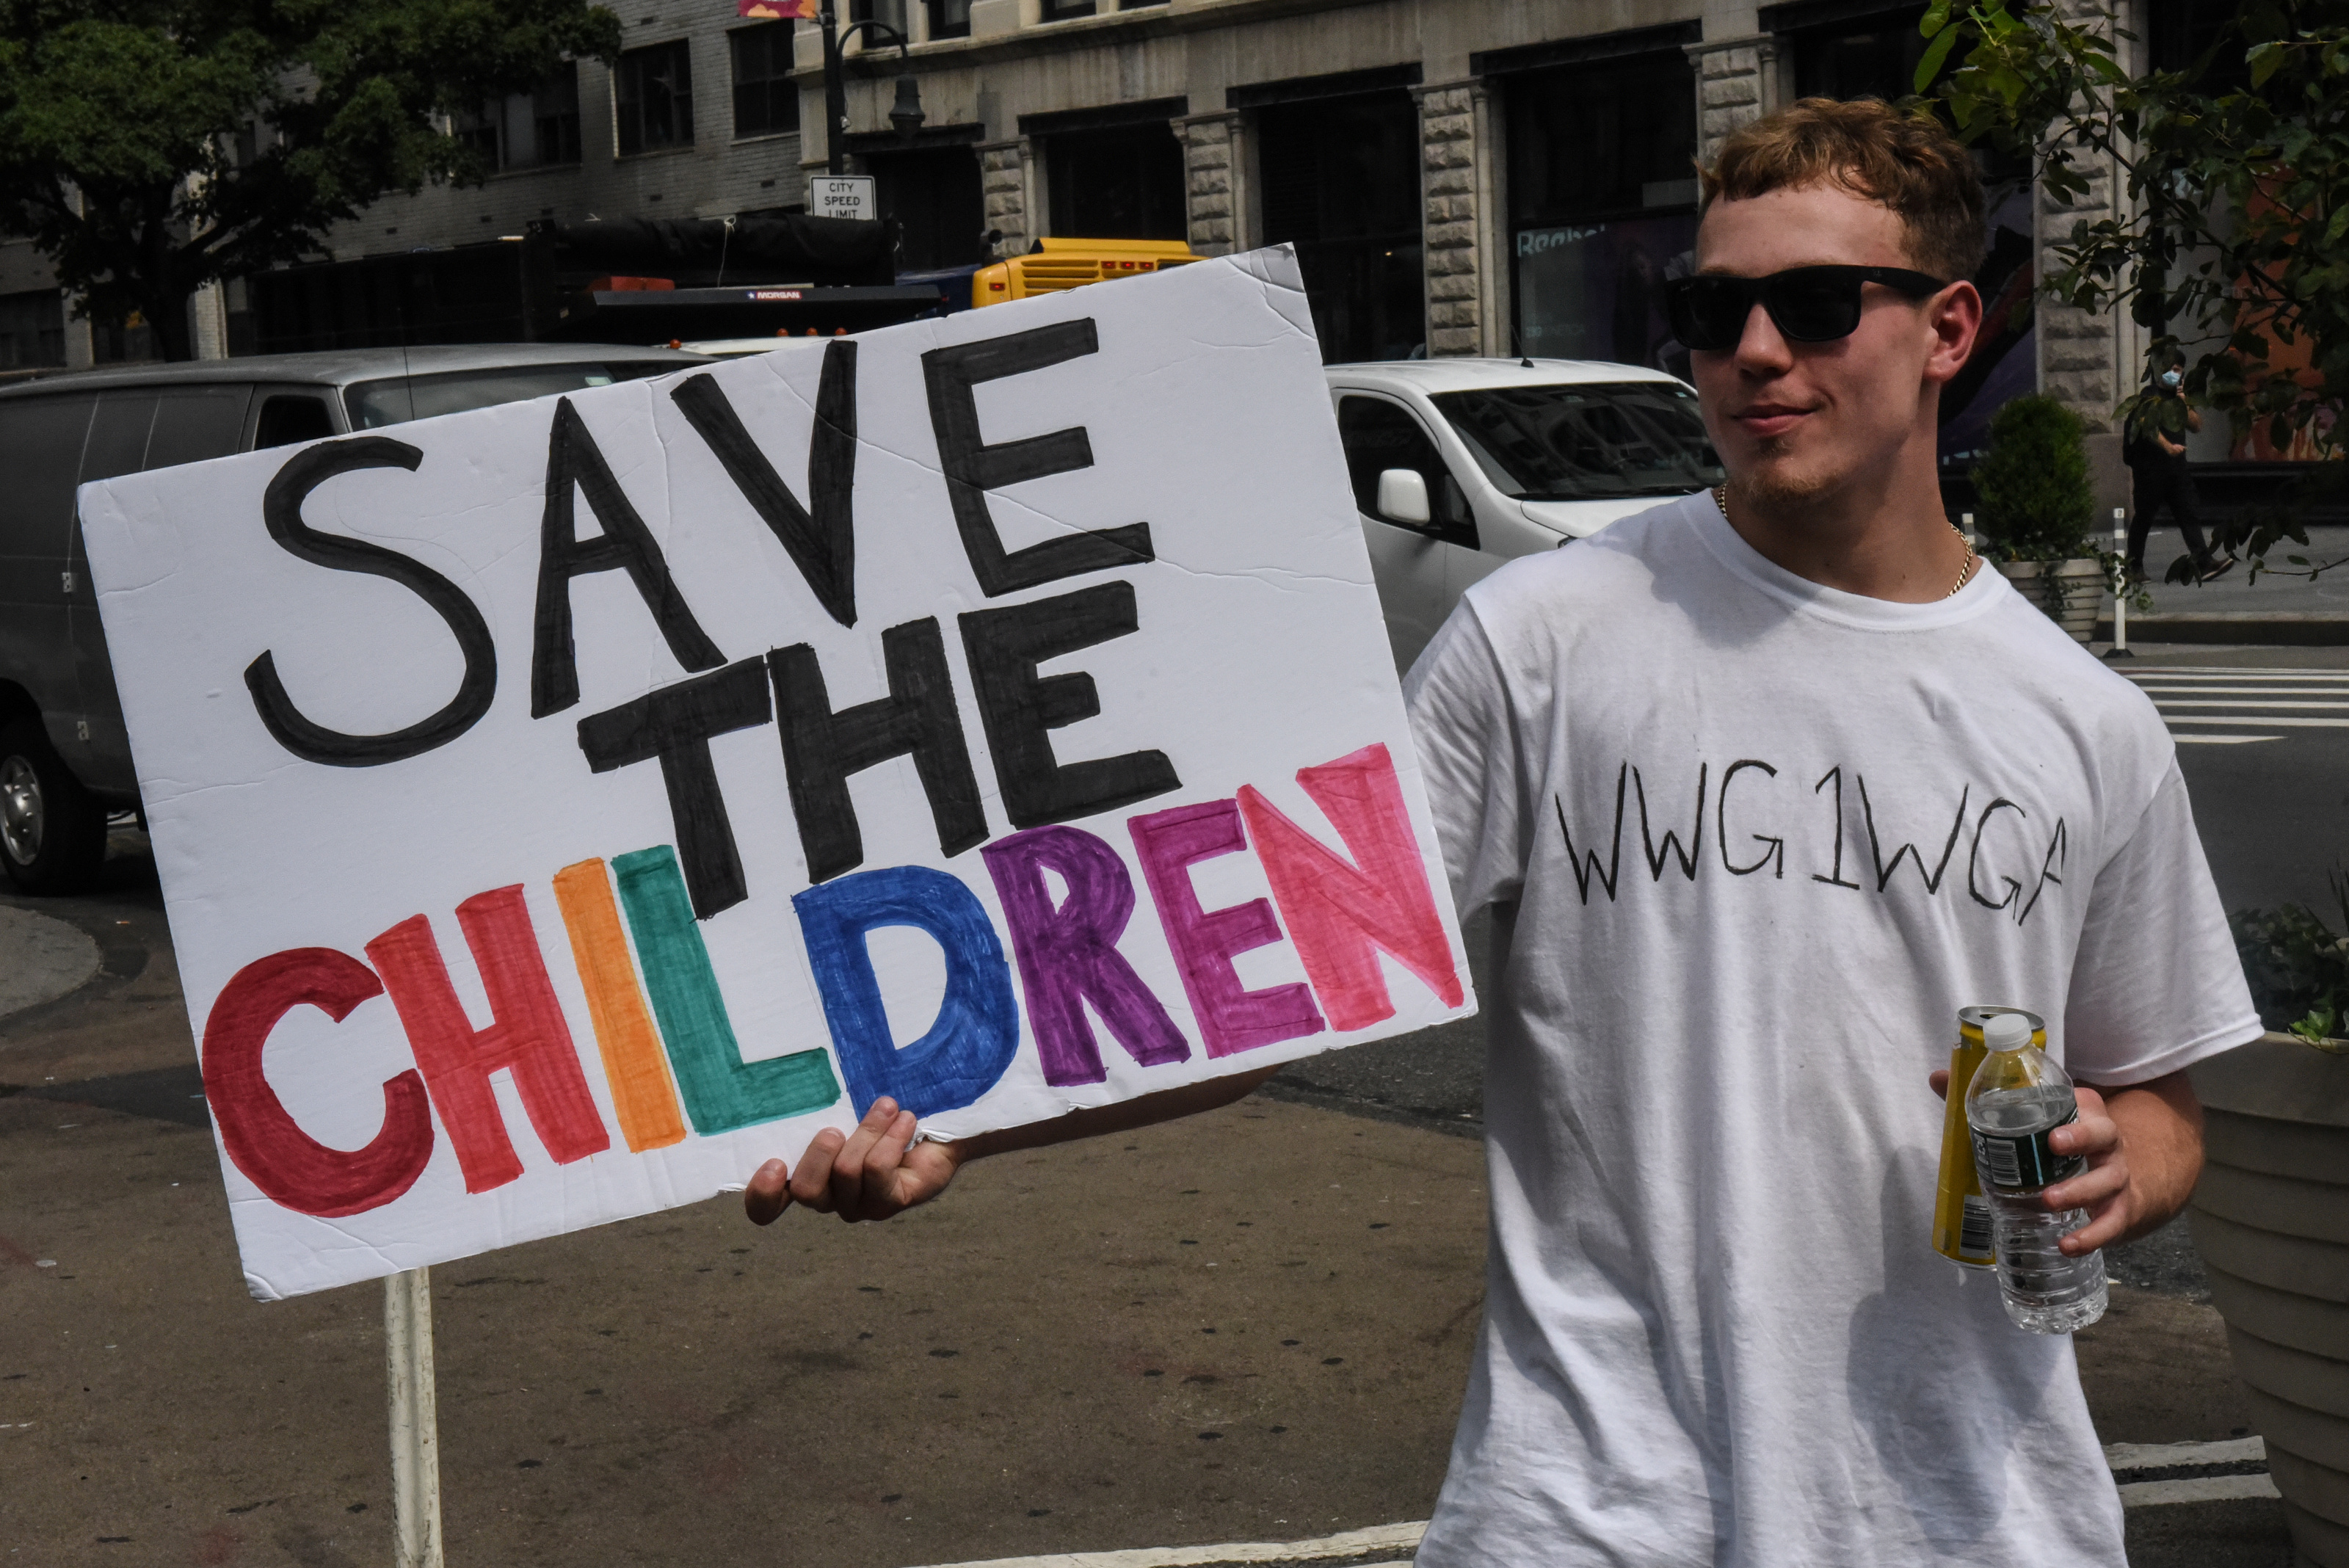 Una persona lleva una camiseta con el anagrama WWG1WGA, el eslogan de QAnon, mientras participa en una marcha y mitin para "salvar a los niños" en la ciudad de Nueva York, el 12 de agosto de 2020 (REUTERS/Stephanie Keith)